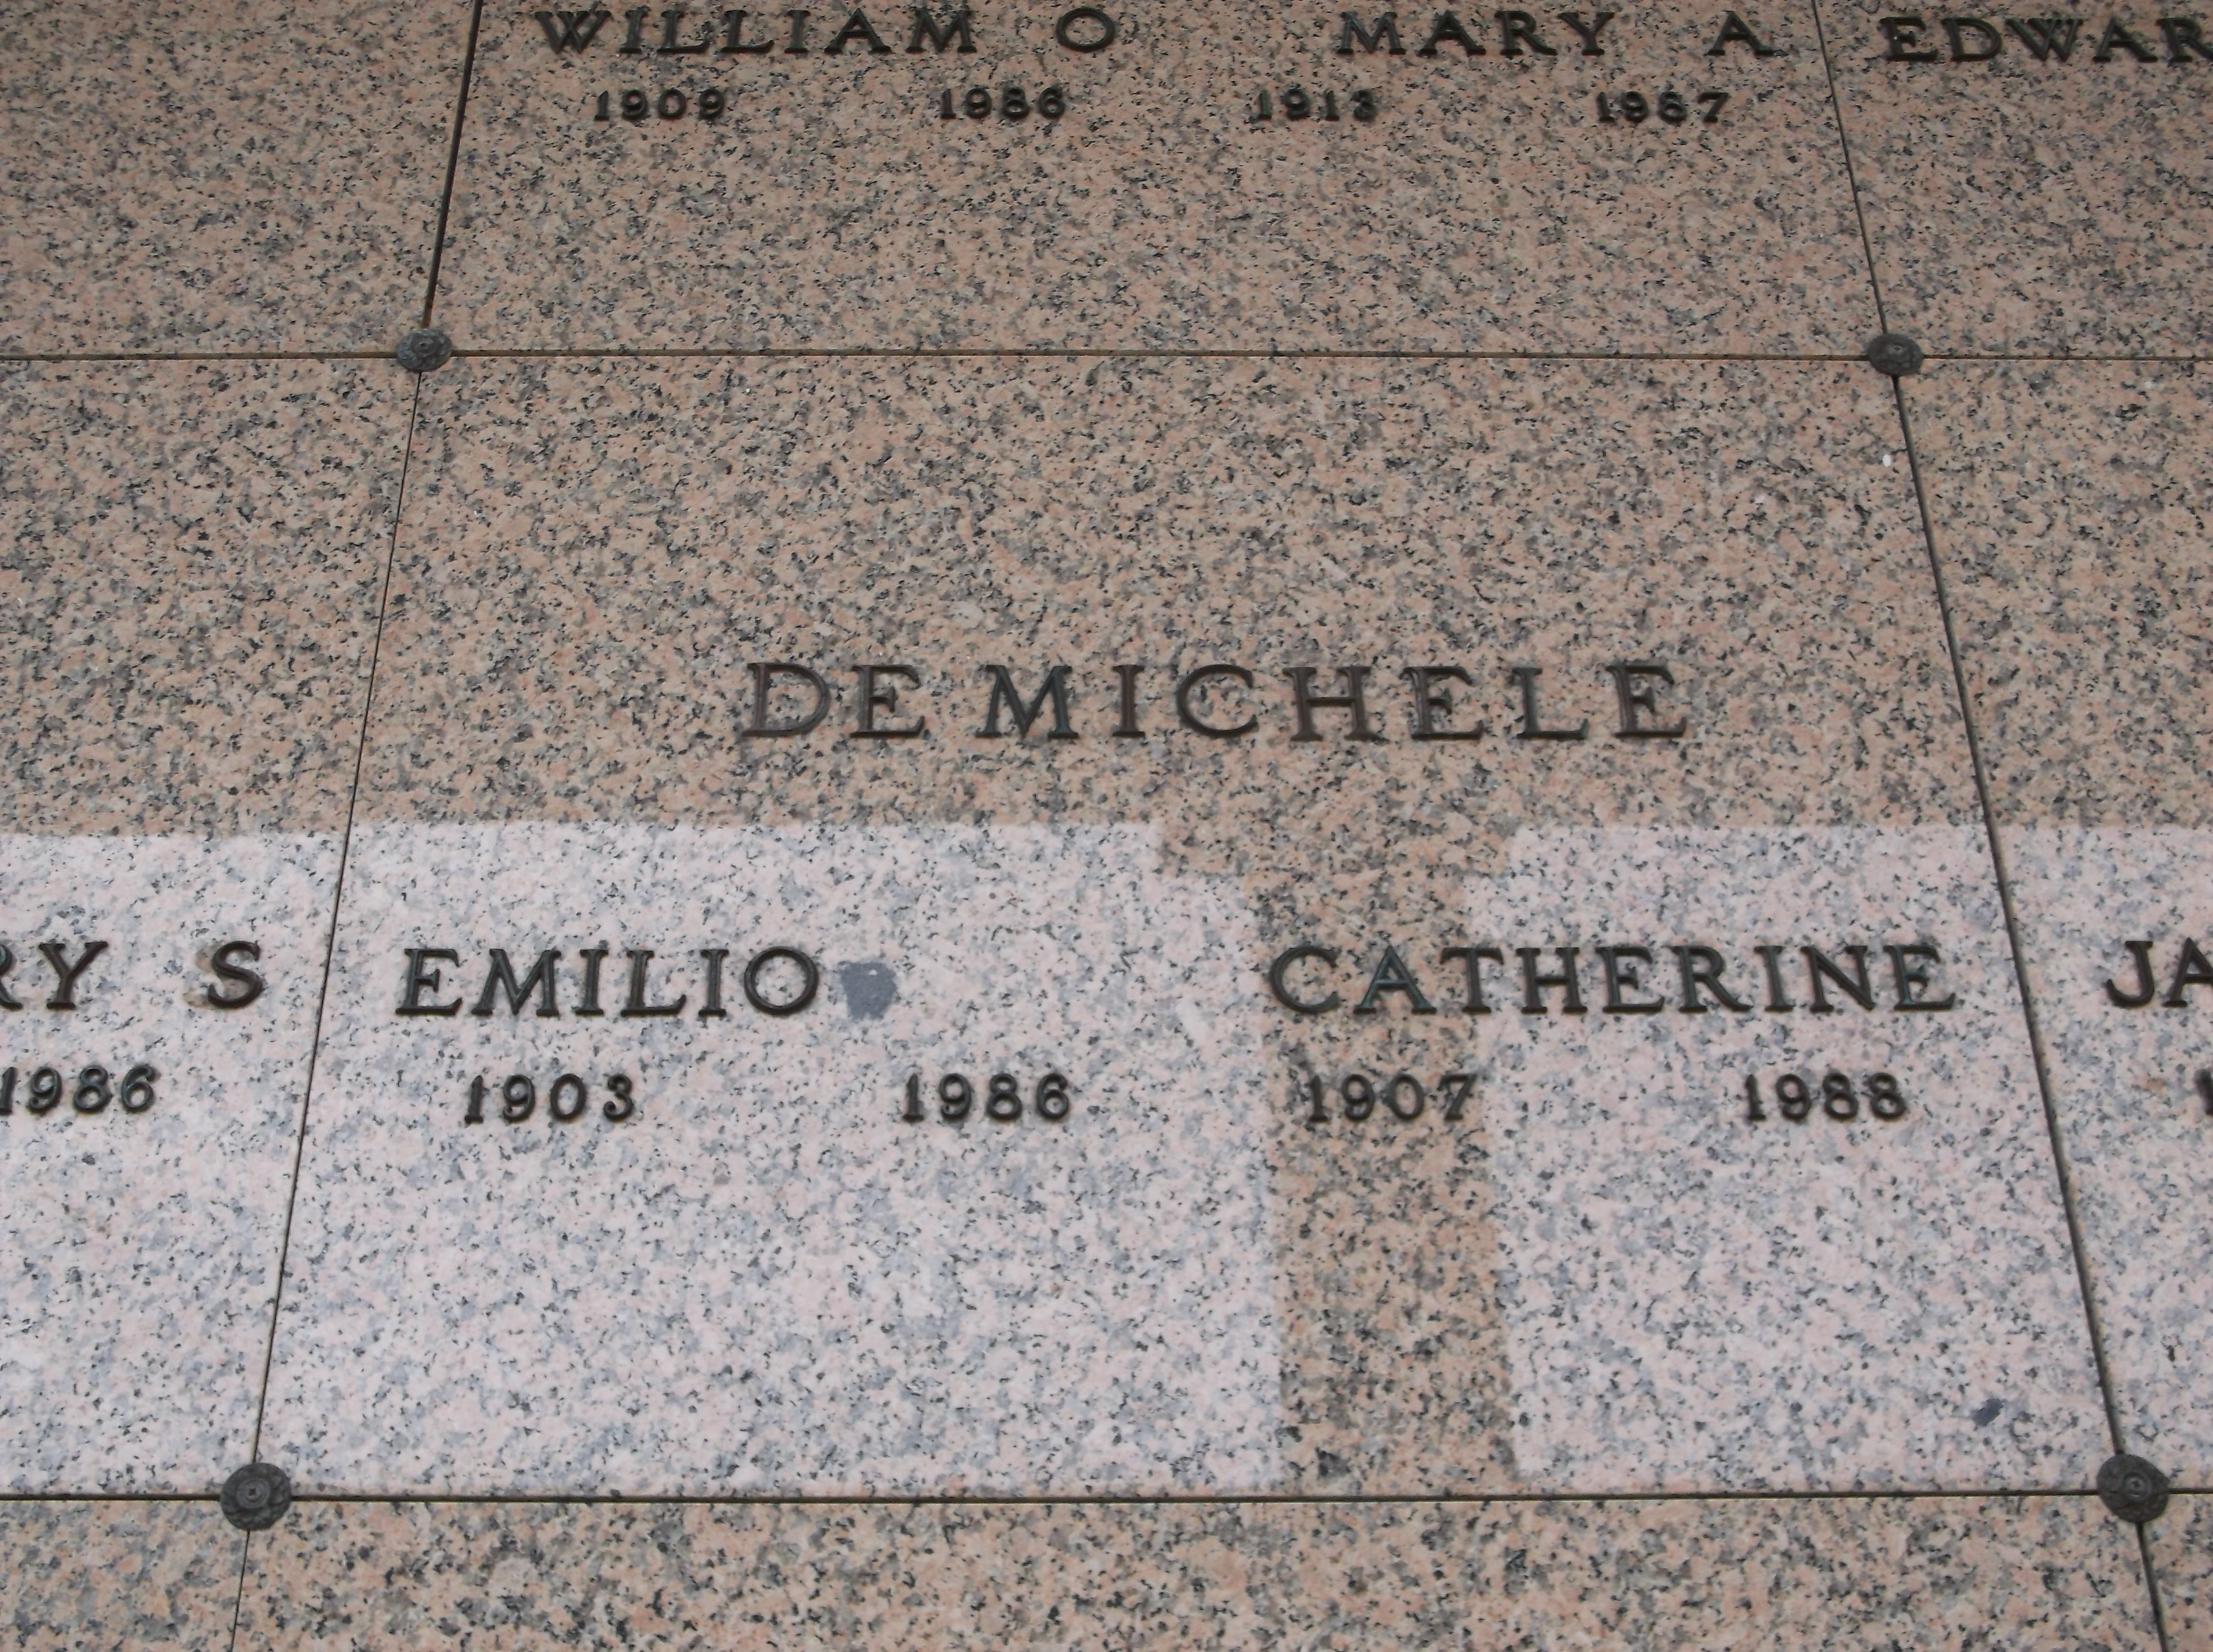 Emilio De Michele